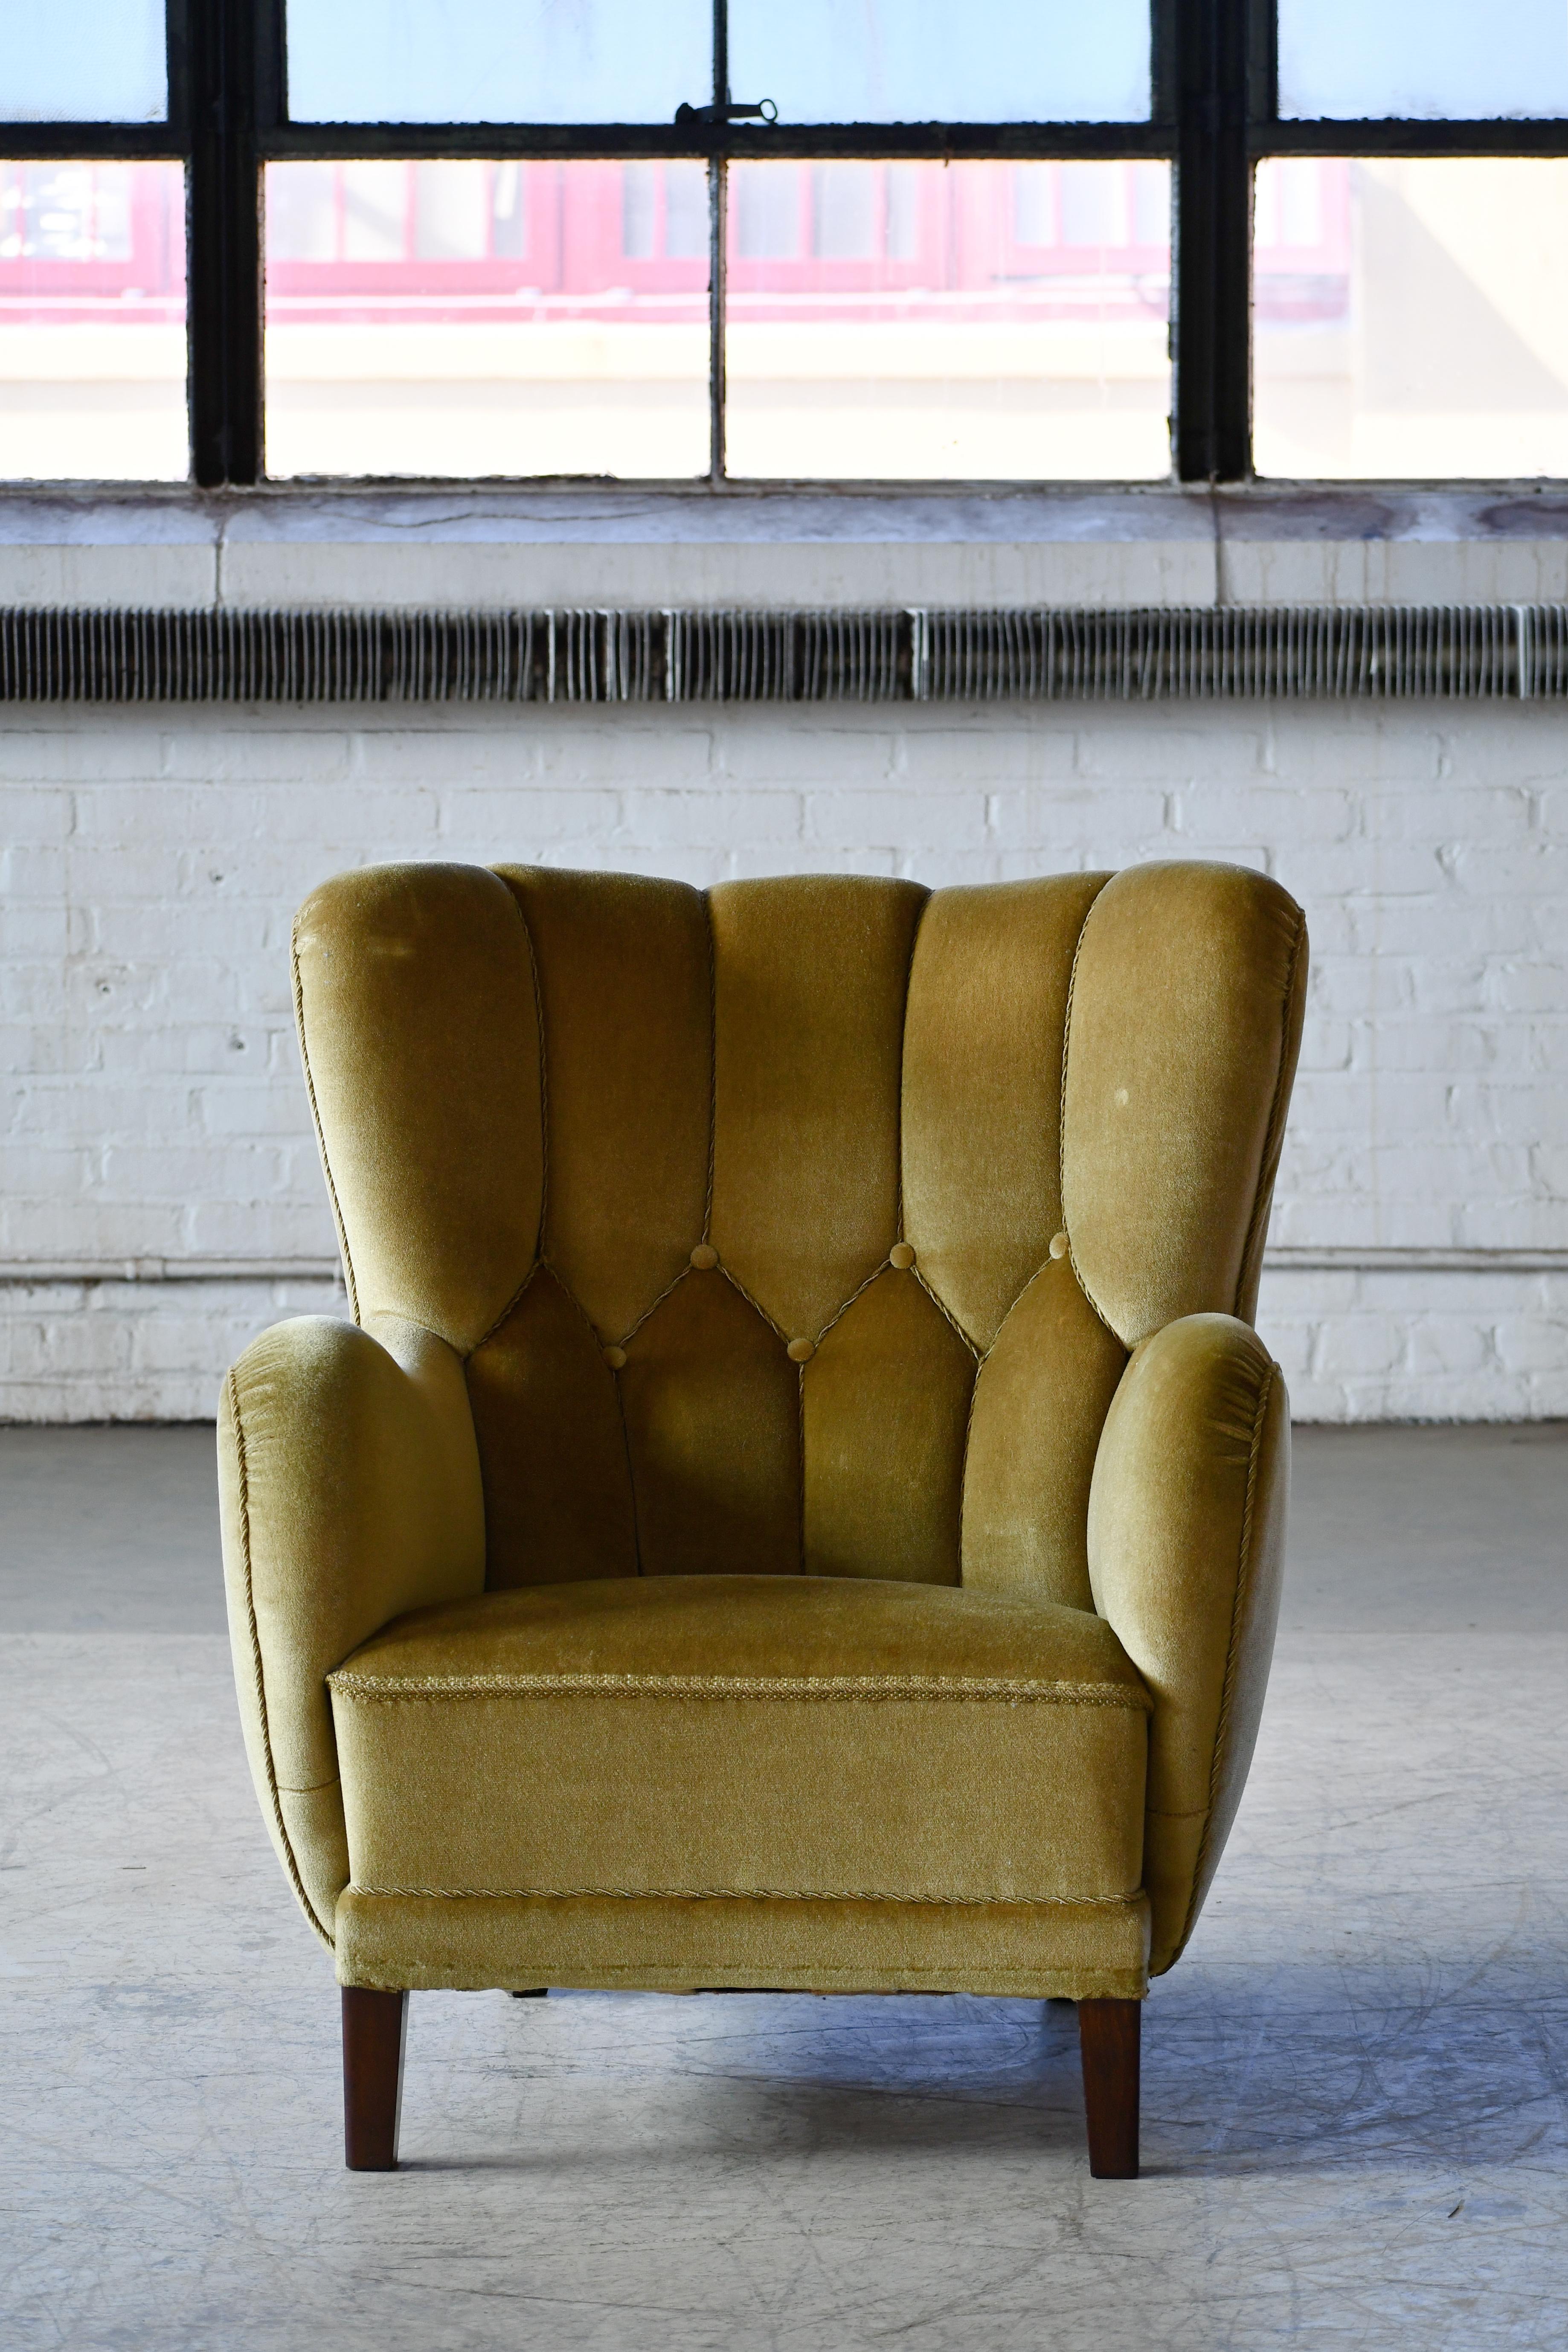 Super charmanter Sessel aus den 1940er Jahren im Stil von Mogens Lassen mit sehr skulpturaler, organischer Form und harmonischen Proportionen. Vielseitig und sehr gut geeignet für einen kleineren Raum, der eine stärkere Aussage braucht. Er steht auf